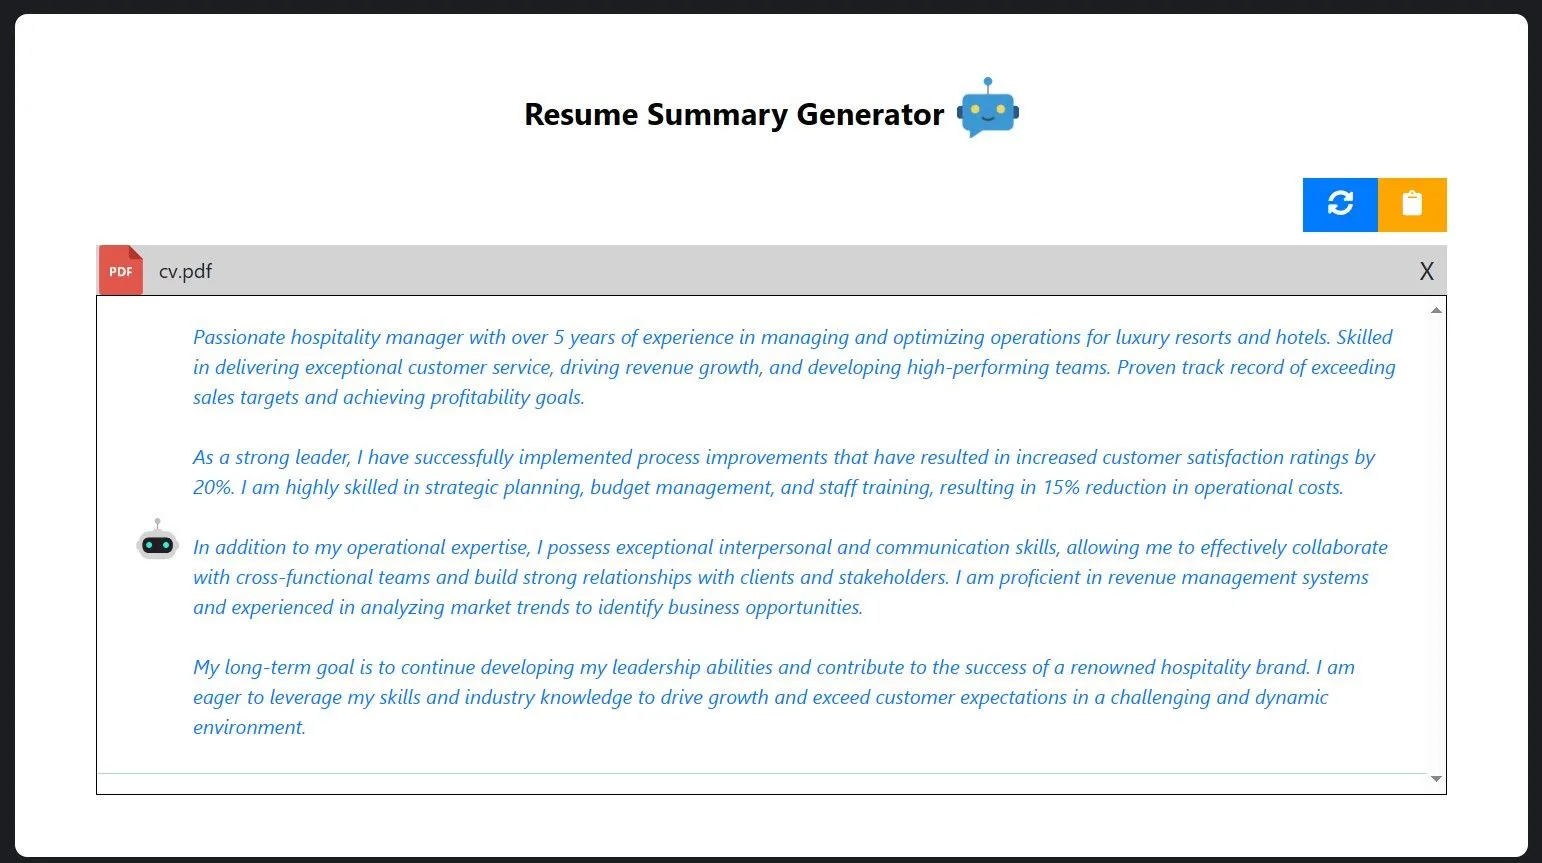 resume summary generator lazyapply